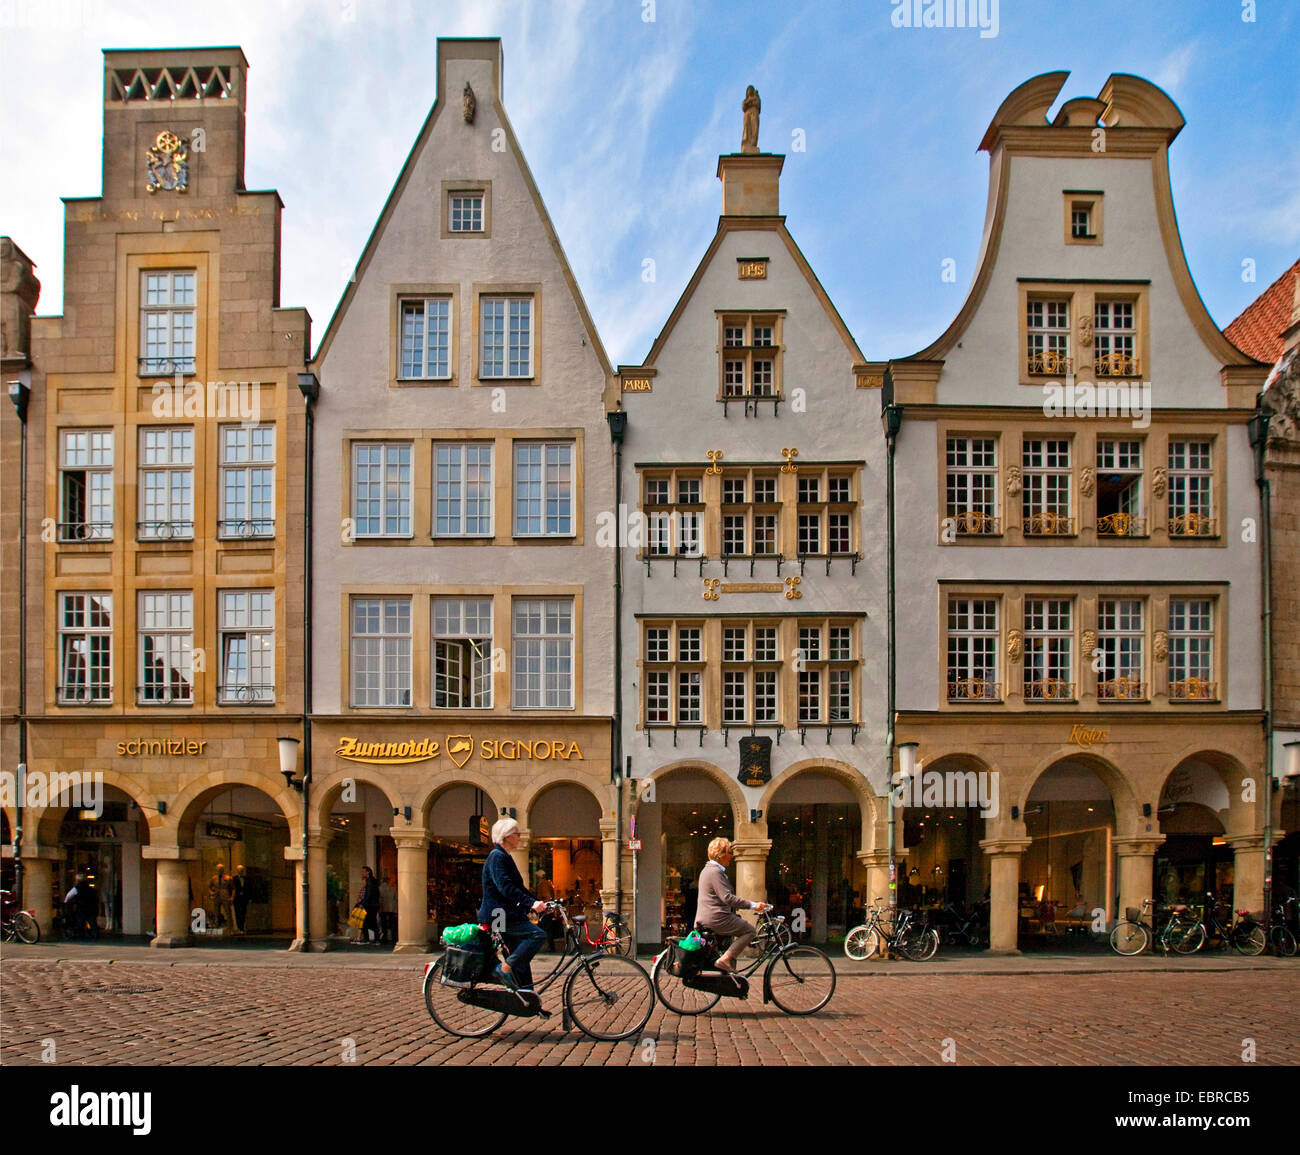 Deux femmes cyclistes en face d'une rangée de maisons à arcades de la place Prinzipalmarkt, Allemagne, Rhénanie du Nord-Westphalie, région de Münster, Münster Banque D'Images